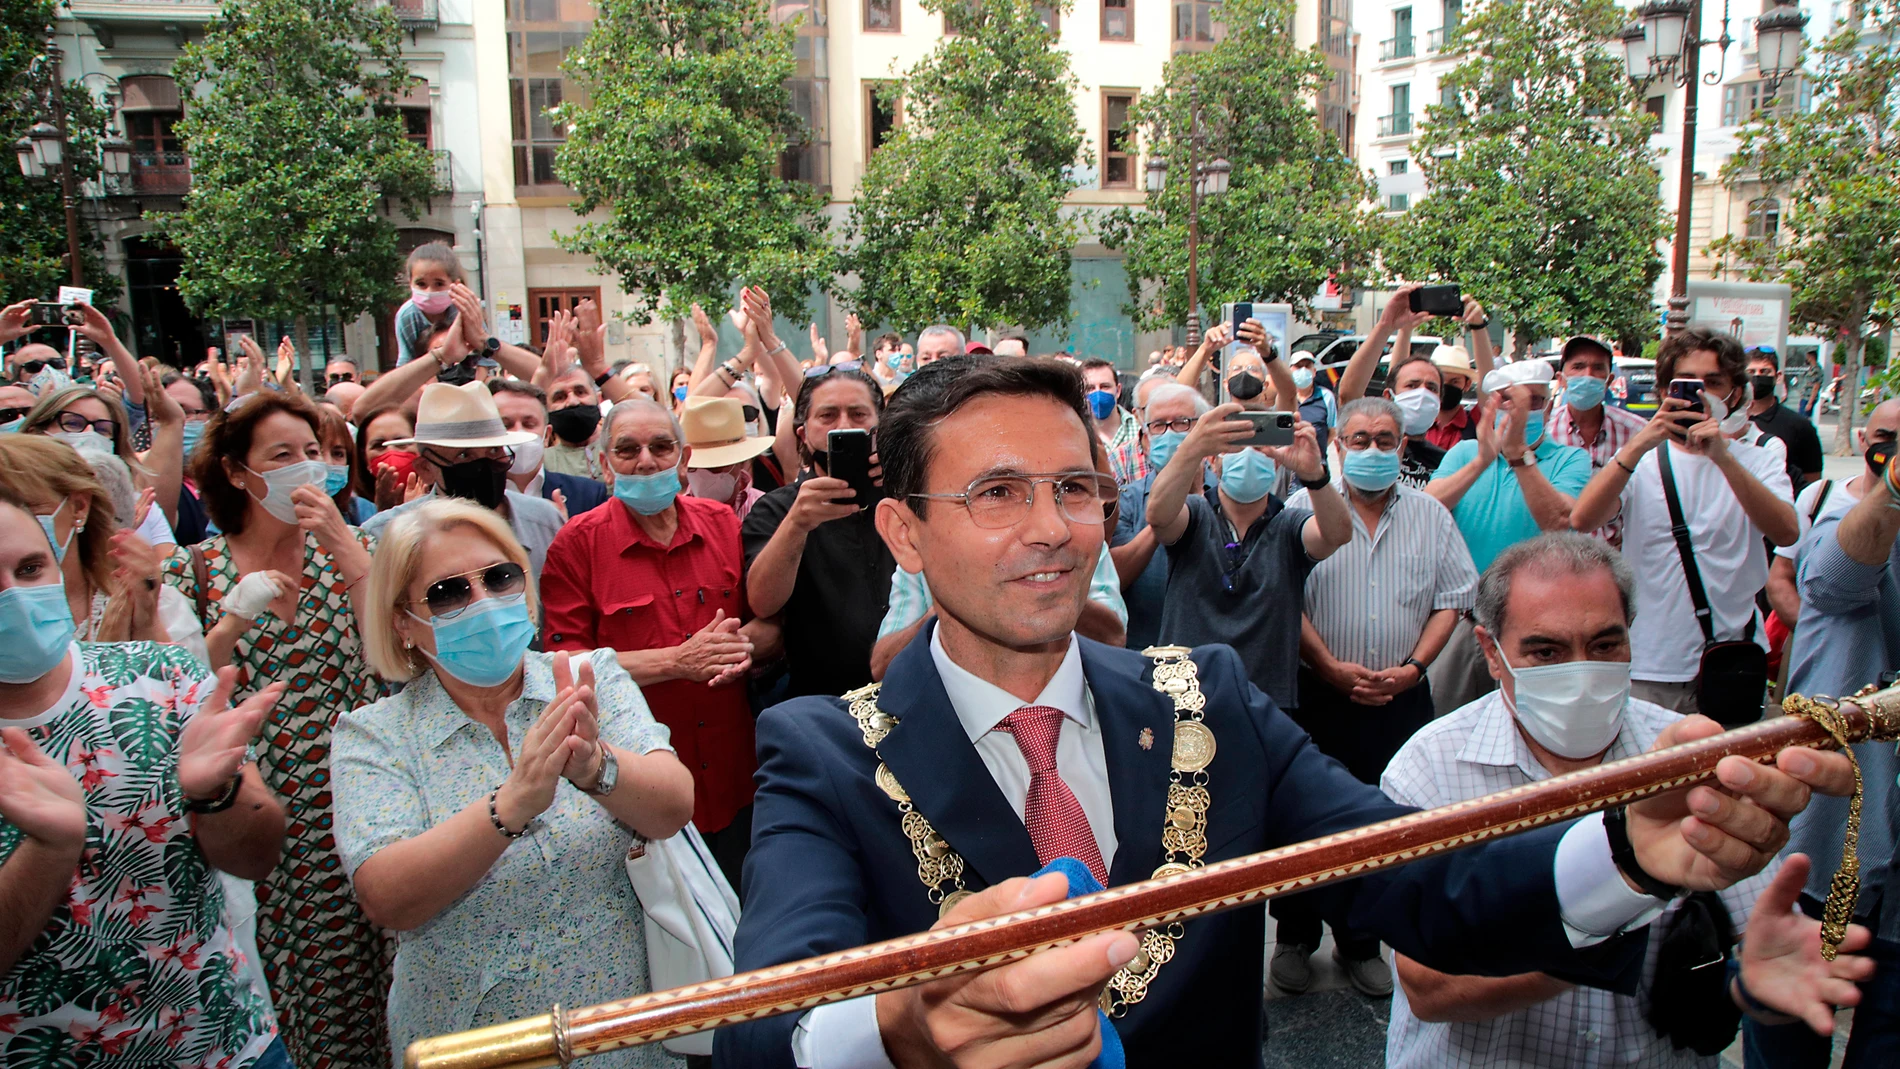 Francisco Cuenca muestra la vara de mando de la ciudad a las puertas del Ayuntamiento, minutos después de ser elegido alcalde